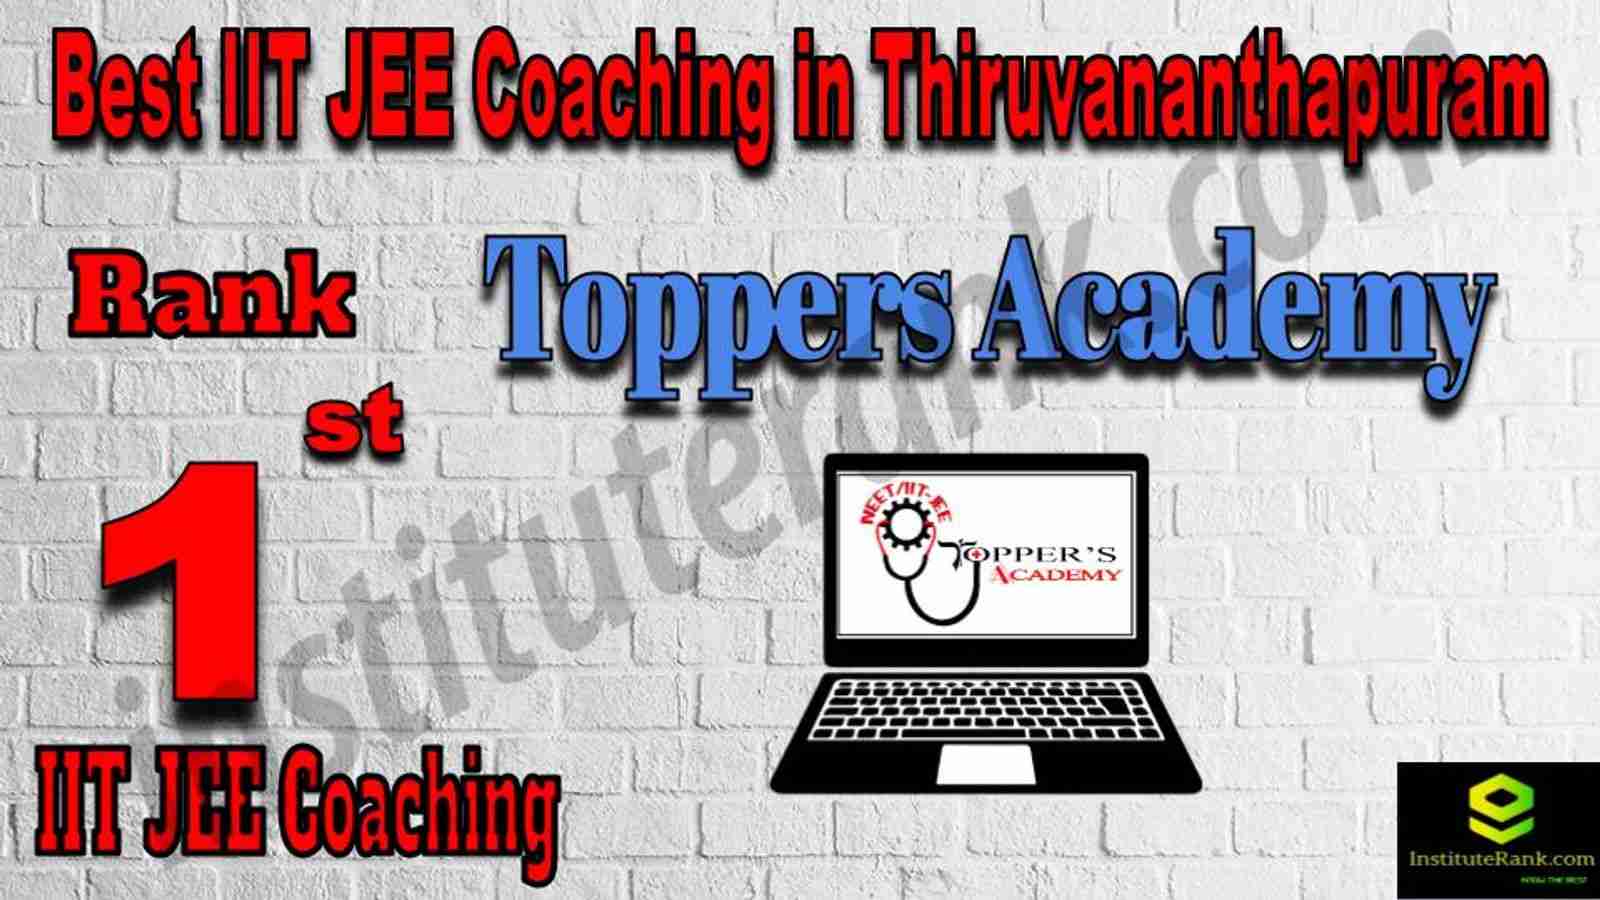 1st Best IIT JEE Coaching in Thiruvananthapuram